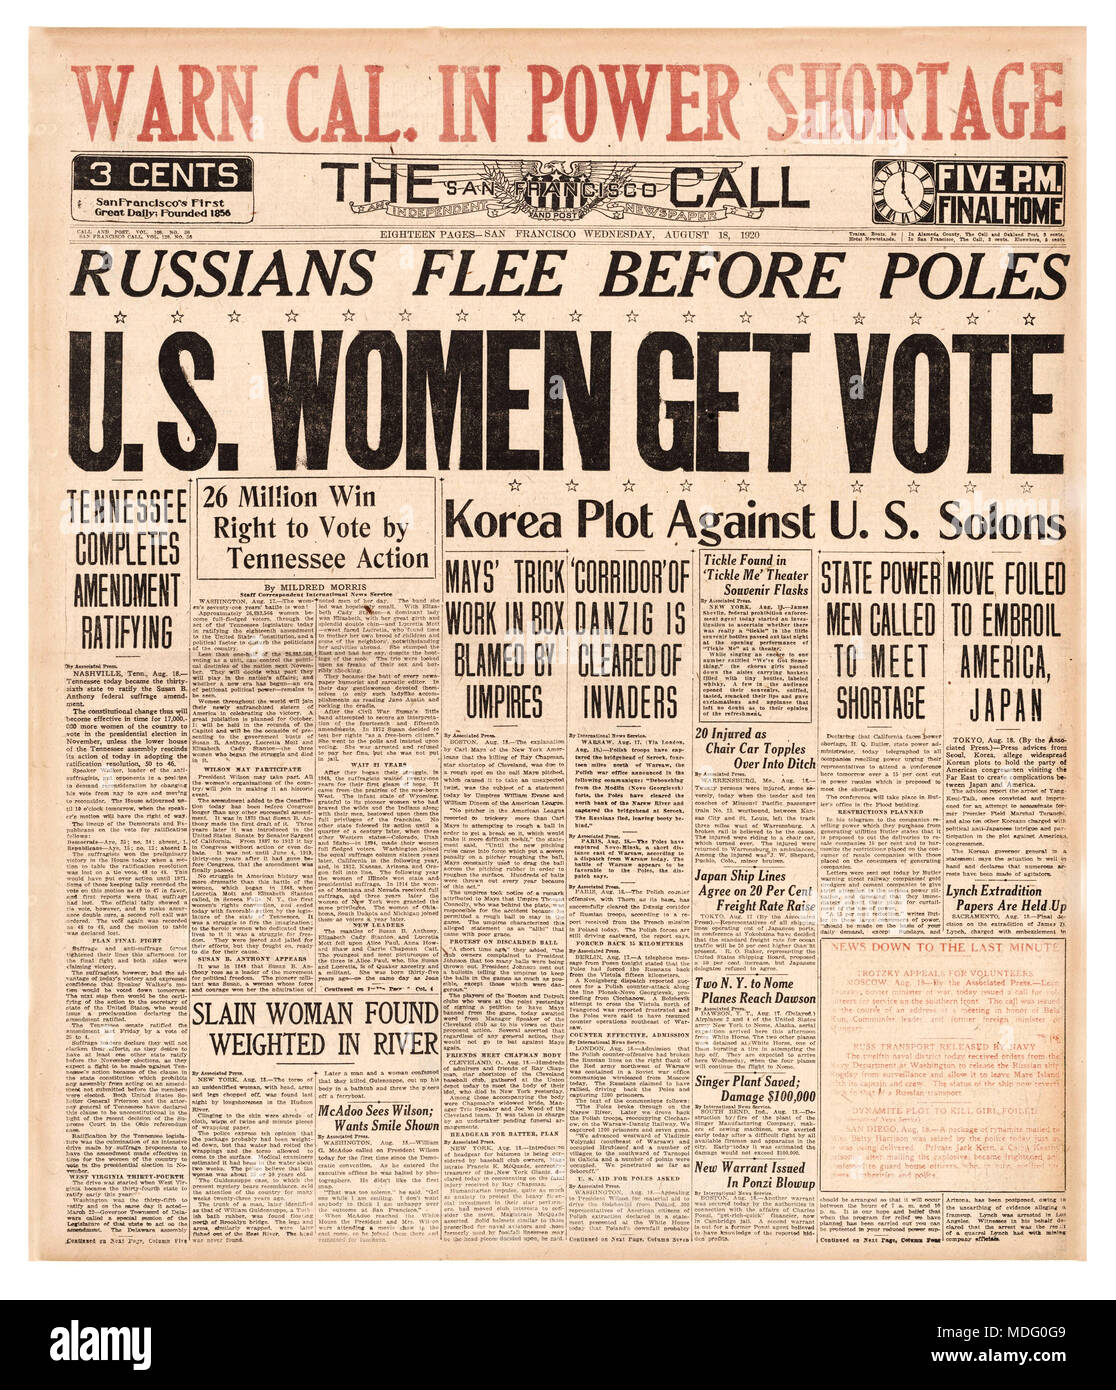 Les femmes américaines OBTIENNENT LE VOTE 19e amendement le vote au suffrage universel du journal le 18 1920 août le Tennessee est devenu le 36e État à ratifier le 19e amendement à la Constitution des États-Unis. Sept ans après le défilé du suffrage et 72 ans après le début de la lutte, les femmes de chaque État américain ont finalement gagné le droit de vote. Banque D'Images